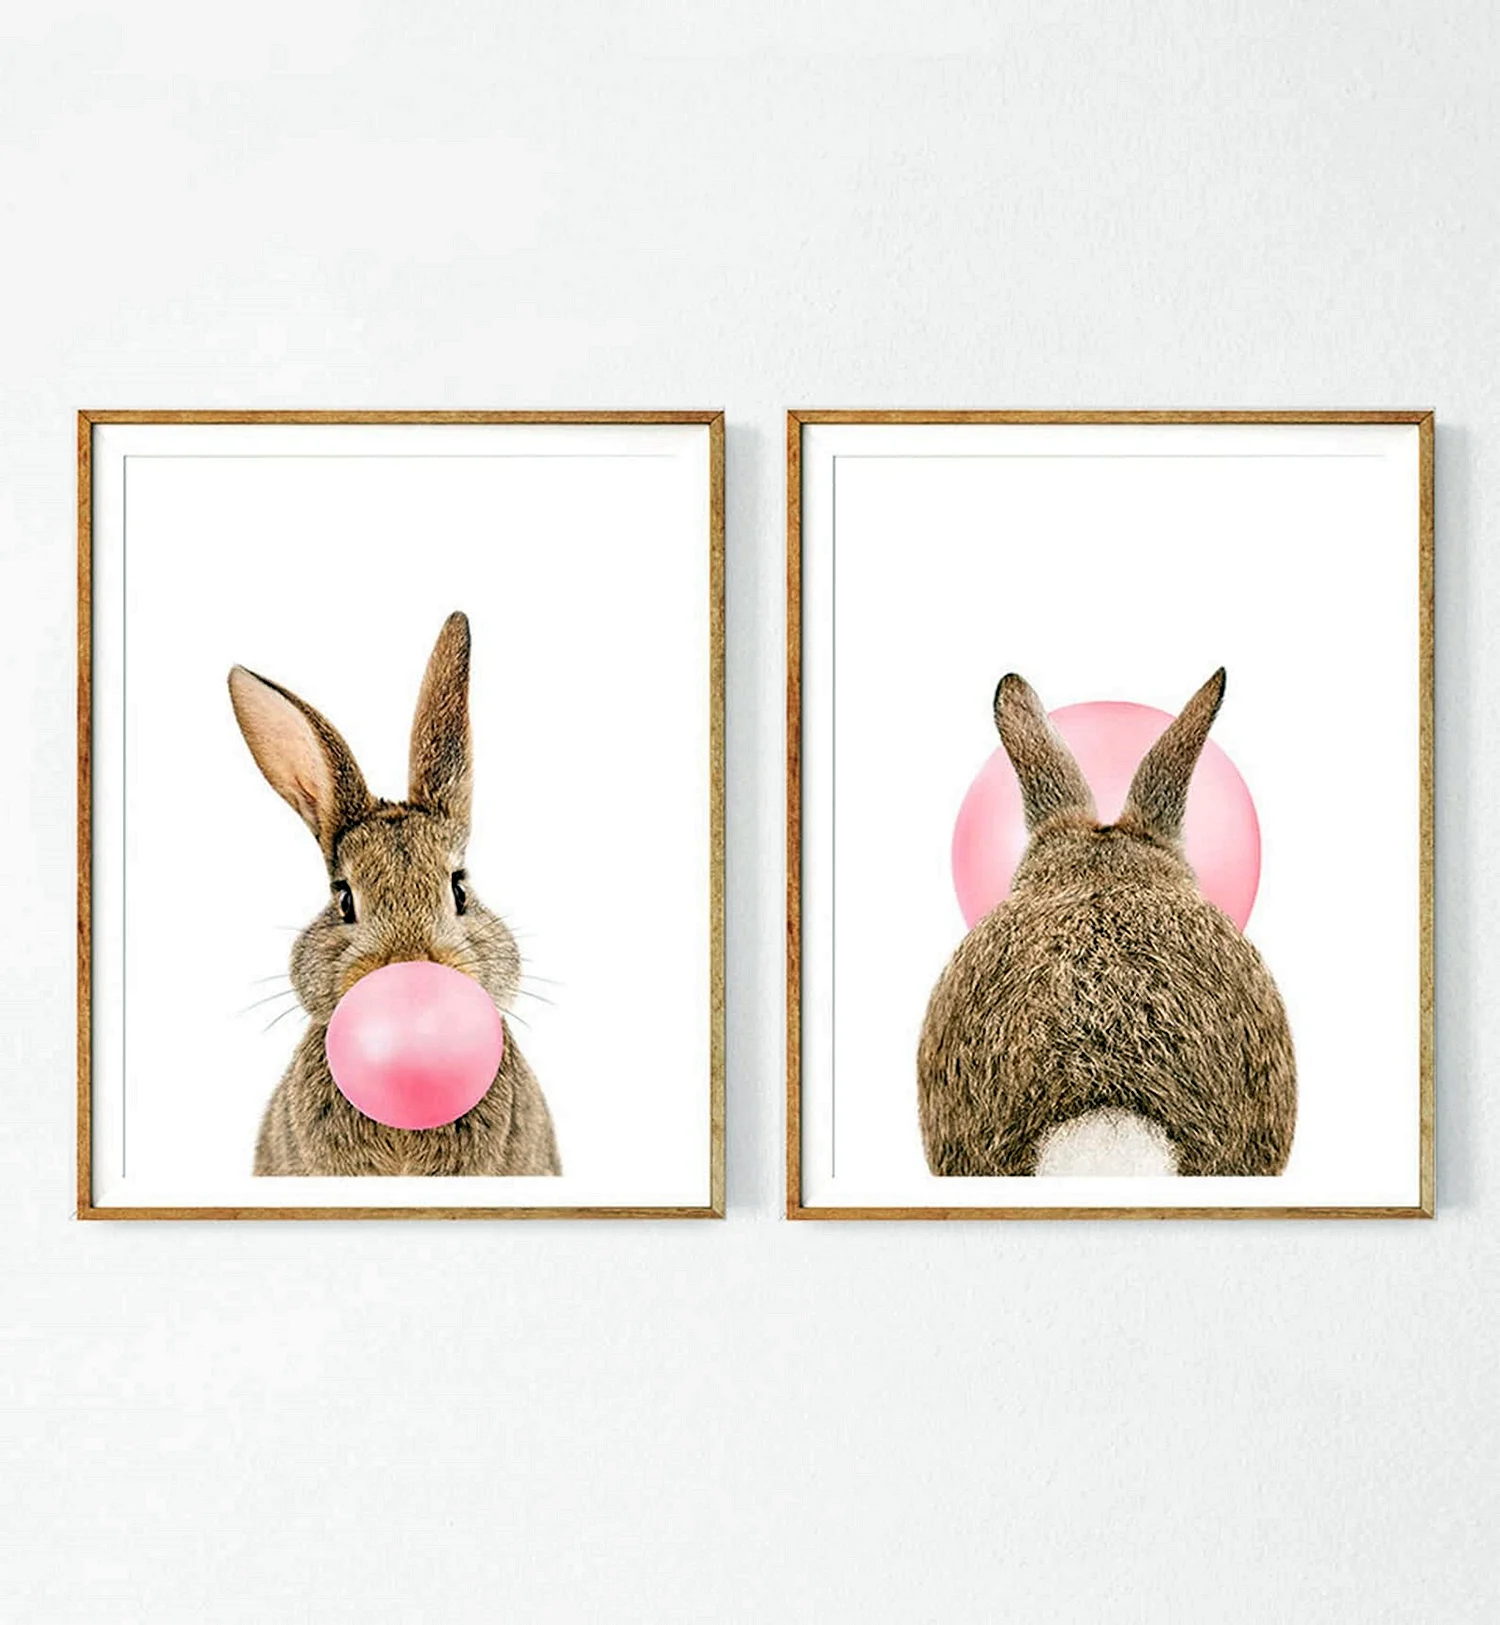 Постеры на стену с кроликами